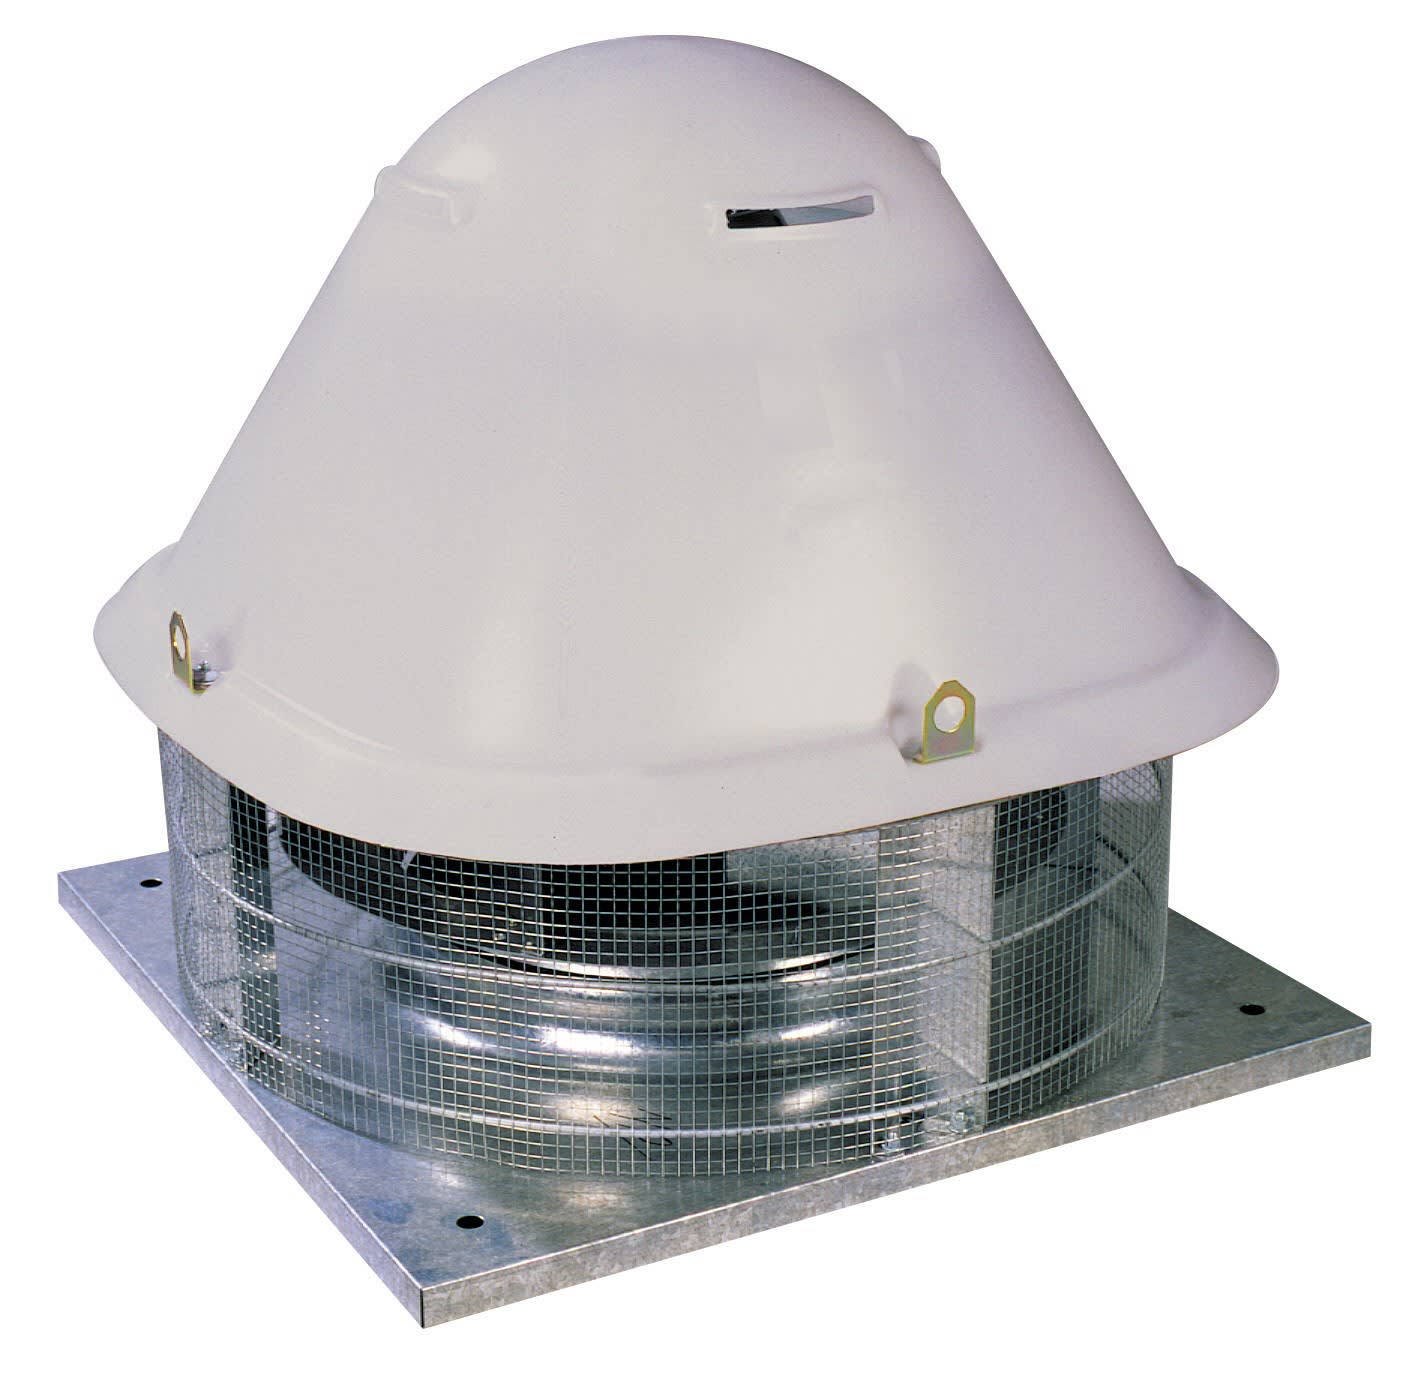 S&P - Tourelle centrifuge horizontale, 4000 m3/h, 4 pôles, D 315 mm, monophasée 230V